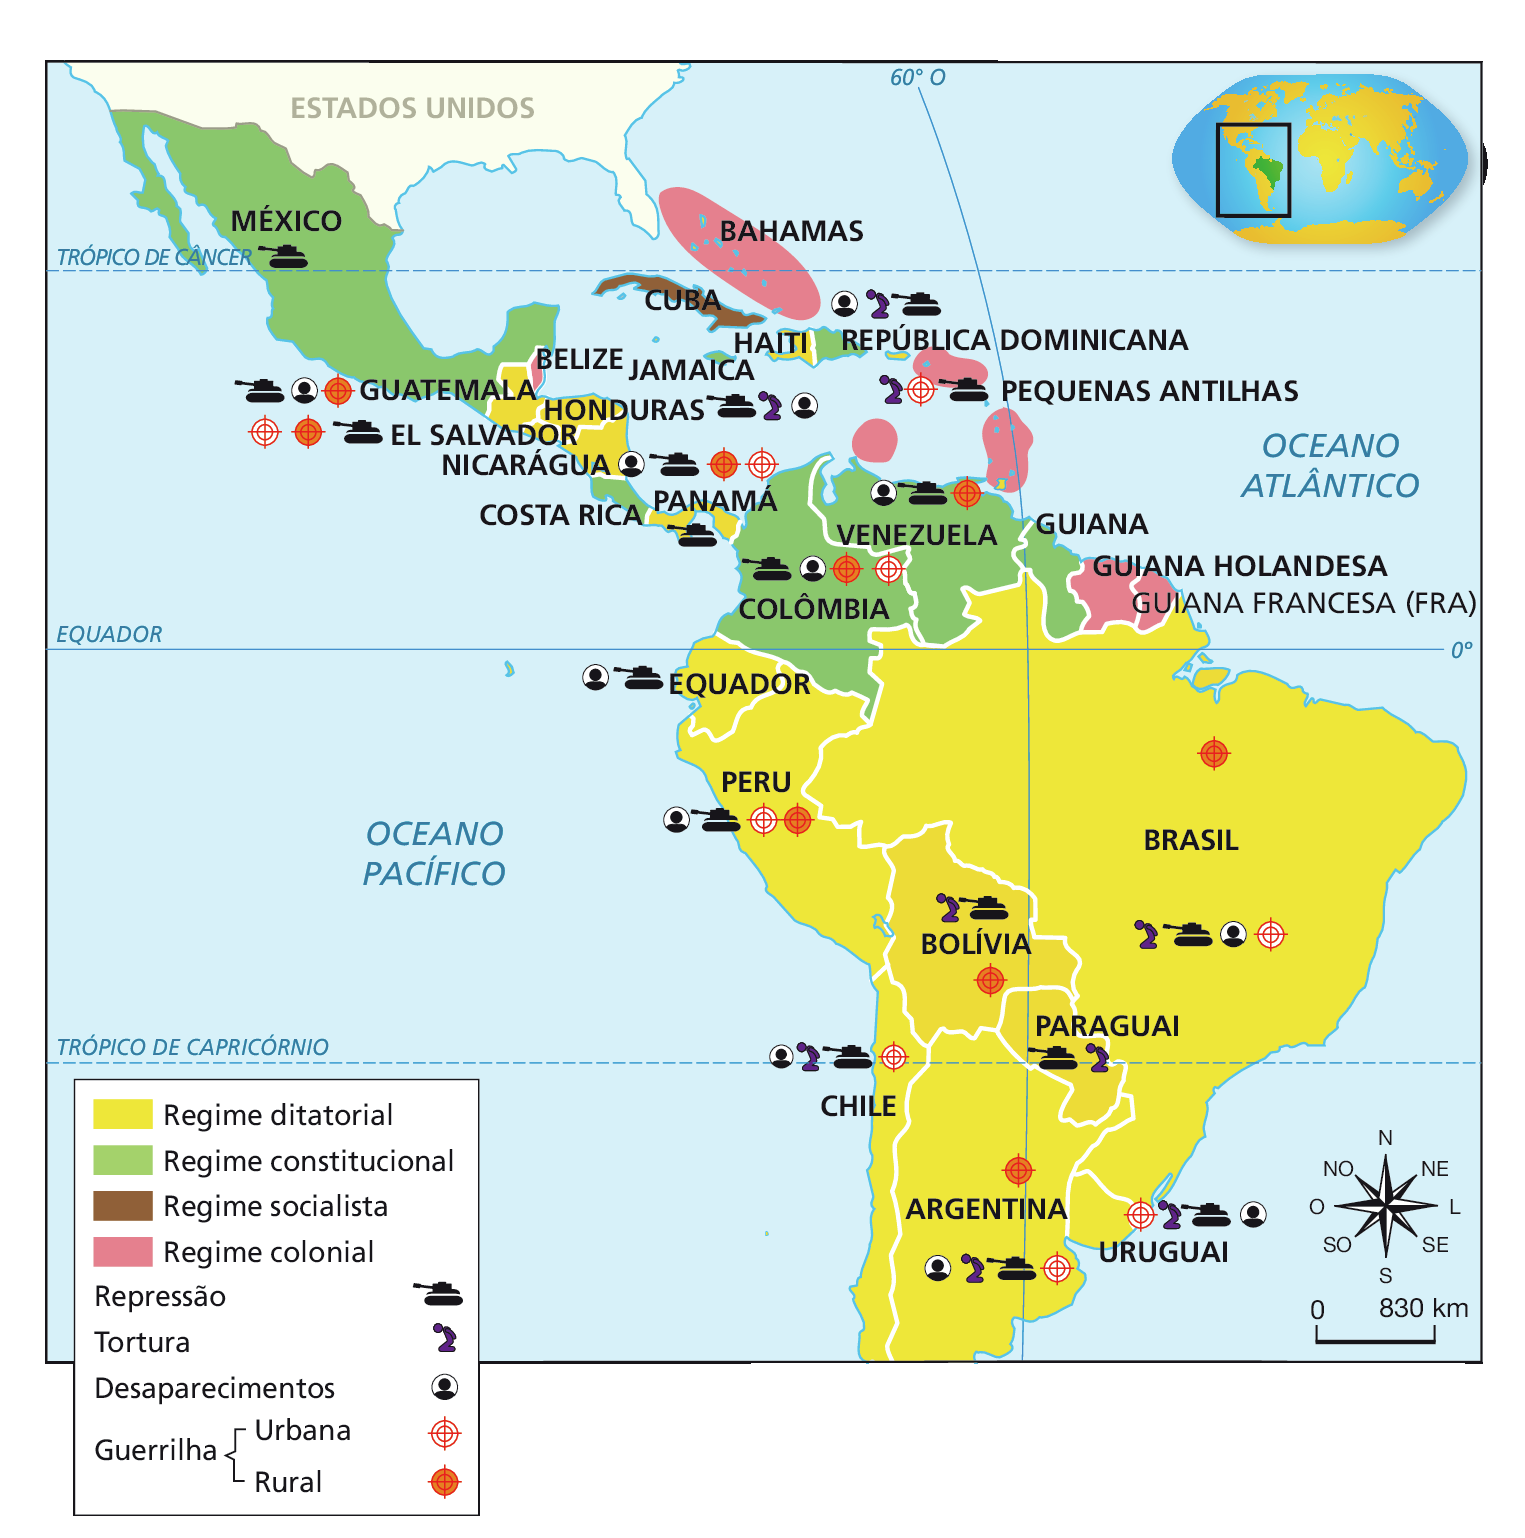 Mapa. Regimes políticos na América Latina (1960-1970). Mapa representando a América Latina. 
Em amarelo, 'Regime ditatorial', compreendendo o Brasil (com ícones indicando tortura, repressão, desaparecimentos, guerrilha urbana e guerrilha rural); Uruguai (com ícones indicando guerrilha urbana, tortura, repressão e desaparecimentos); Argentina (com ícones indicando desaparecimentos, tortura, repressão, guerrilha rural e guerrilha urbana); Paraguai (com ícones indicando repressão e tortura); Chile (com ícones indicando desaparecimentos, tortura, repressão e guerrilha urbana); Bolívia (com ícones indicando tortura, repressão e guerrilha rural); Peru (com ícones indicando desaparecimentos, repressão, guerrilha urbana e guerrilha rural); Equador (com ícones indicando desaparecimentos e repressão); Panamá (com ícones indicando repressão); Nicarágua (com ícones indicando desaparecimentos, repressão, guerrilha urbana e guerrilha rural); Honduras (com ícones indicando repressão, tortura e desaparecimentos); El Salvador (com ícones indicando guerrilha urbana, guerrilha rural e repressão); Guatemala (com ícones indicando repressão, desaparecimentos e guerrilha rural) e Haiti. 
Em verde, 'Regime constitucional', compreendendo a Colômbia (com ícones indicando repressão, desaparecimentos, guerrilha rural e guerrilha urbana); Venezuela (com ícones indicando desaparecimentos, repressão e guerrilha rural), Guiana; Costa Rica; República Dominicana (com ícones indicando desaparecimentos, tortura e repressão); Jamaica; e México (com ícone indicando repressão). 
Em marrom, 'Regime socialista', destacando Cuba.
Em rosa, 'Regime colonial', compreendendo Guiana Francesa (França); Guiana Holandesa, Pequenas Antilhas (com ícone indicando tortura, guerrilha urbana e repressão); Grandes Antilhas; Bahamas e Belize. 
No canto inferior direito, rosa dos ventos e escala de 0 a 830 quilômetros.